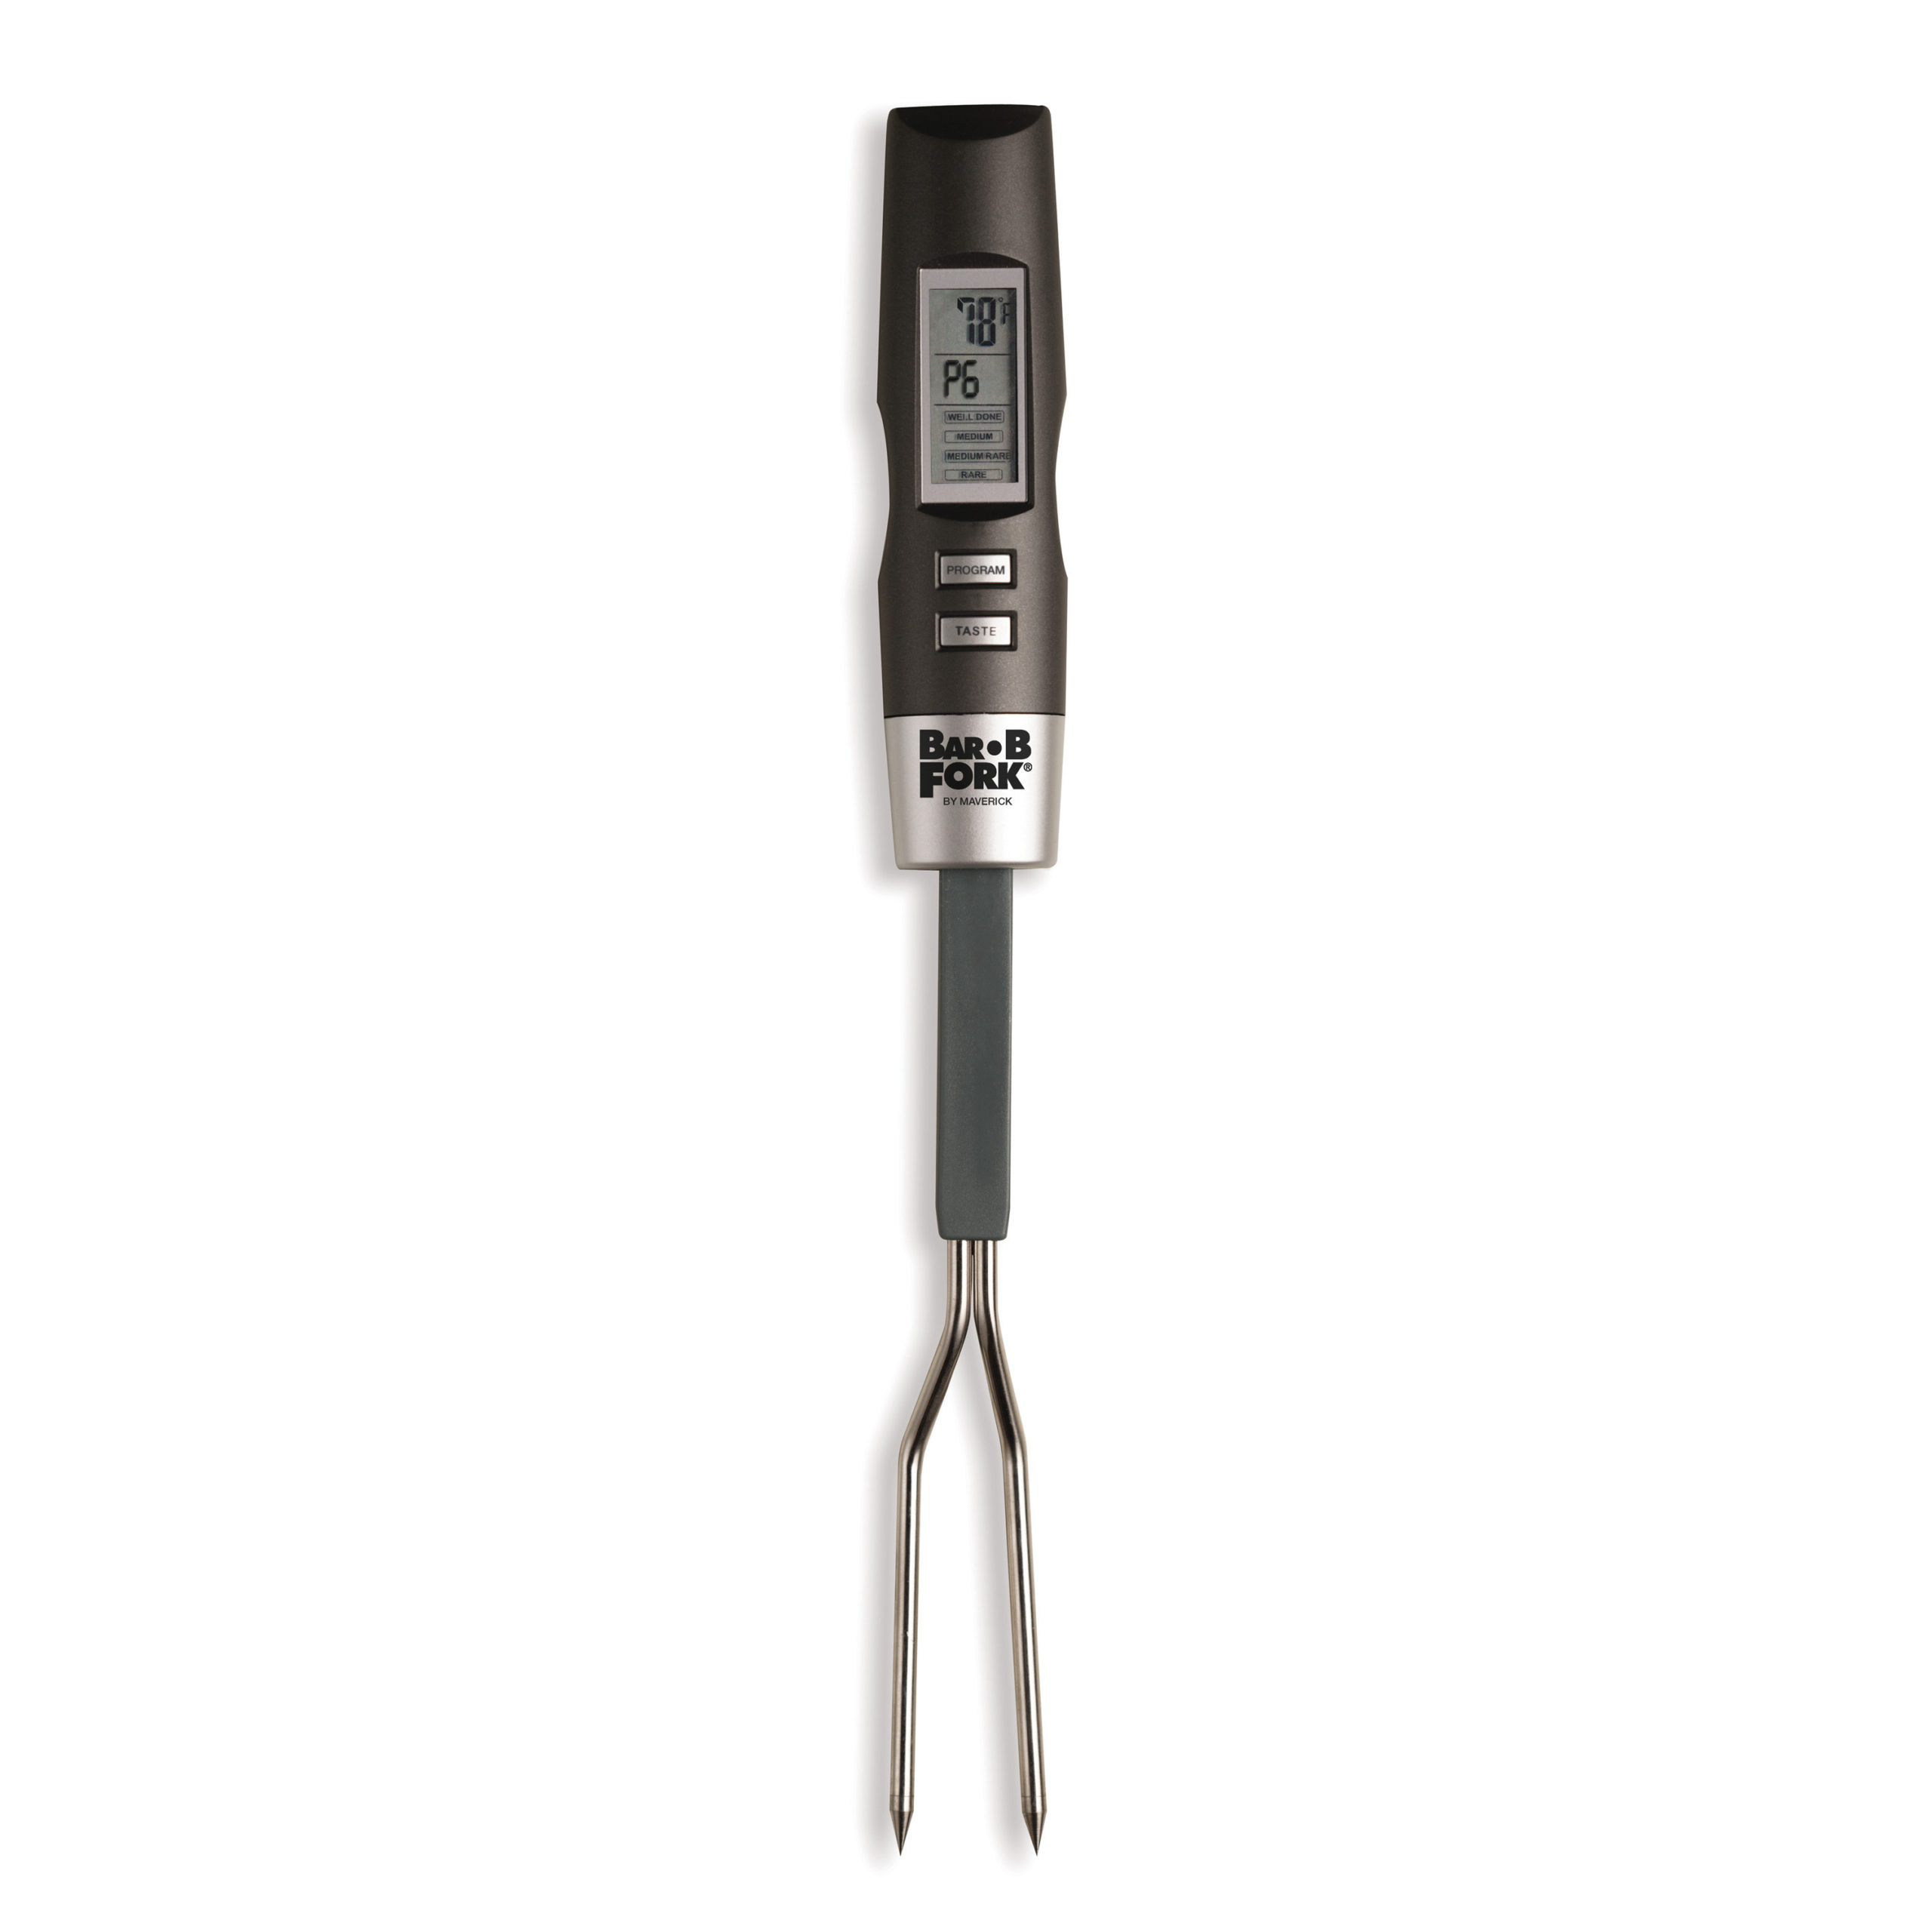 ET-54 Digital Grilling Fork Thermometer